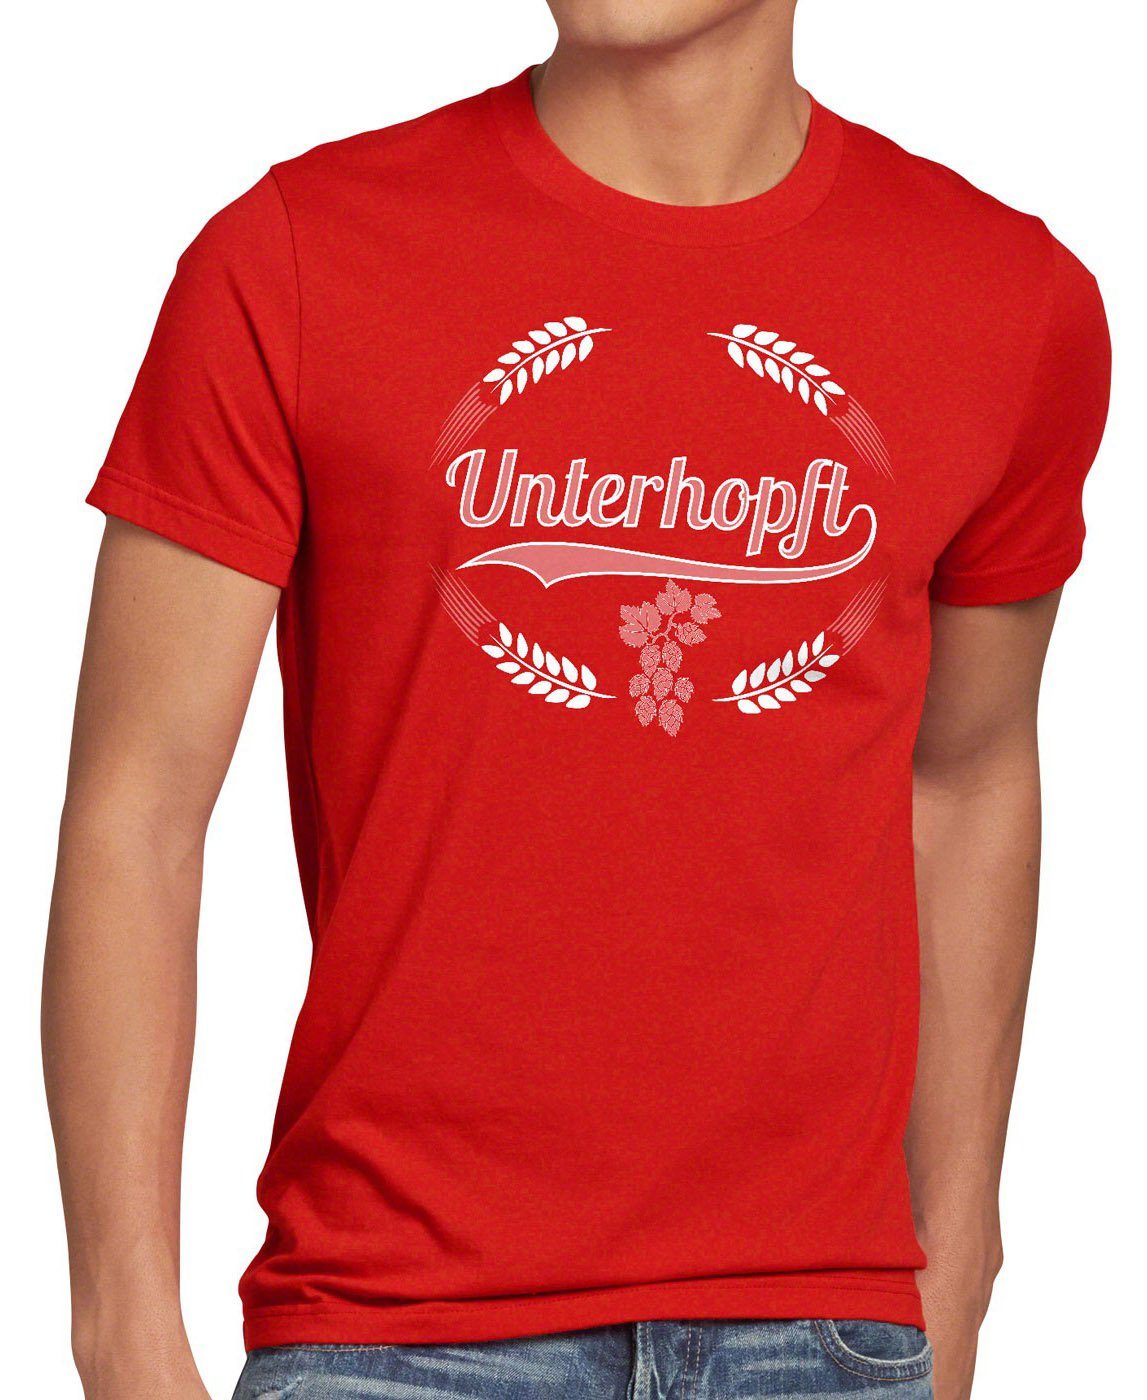 style3 Print-Shirt Herren T-Shirt Unterhopft Funshirt Fest Hopfen Fun Bier Malz Shirt rot Spruch Kult